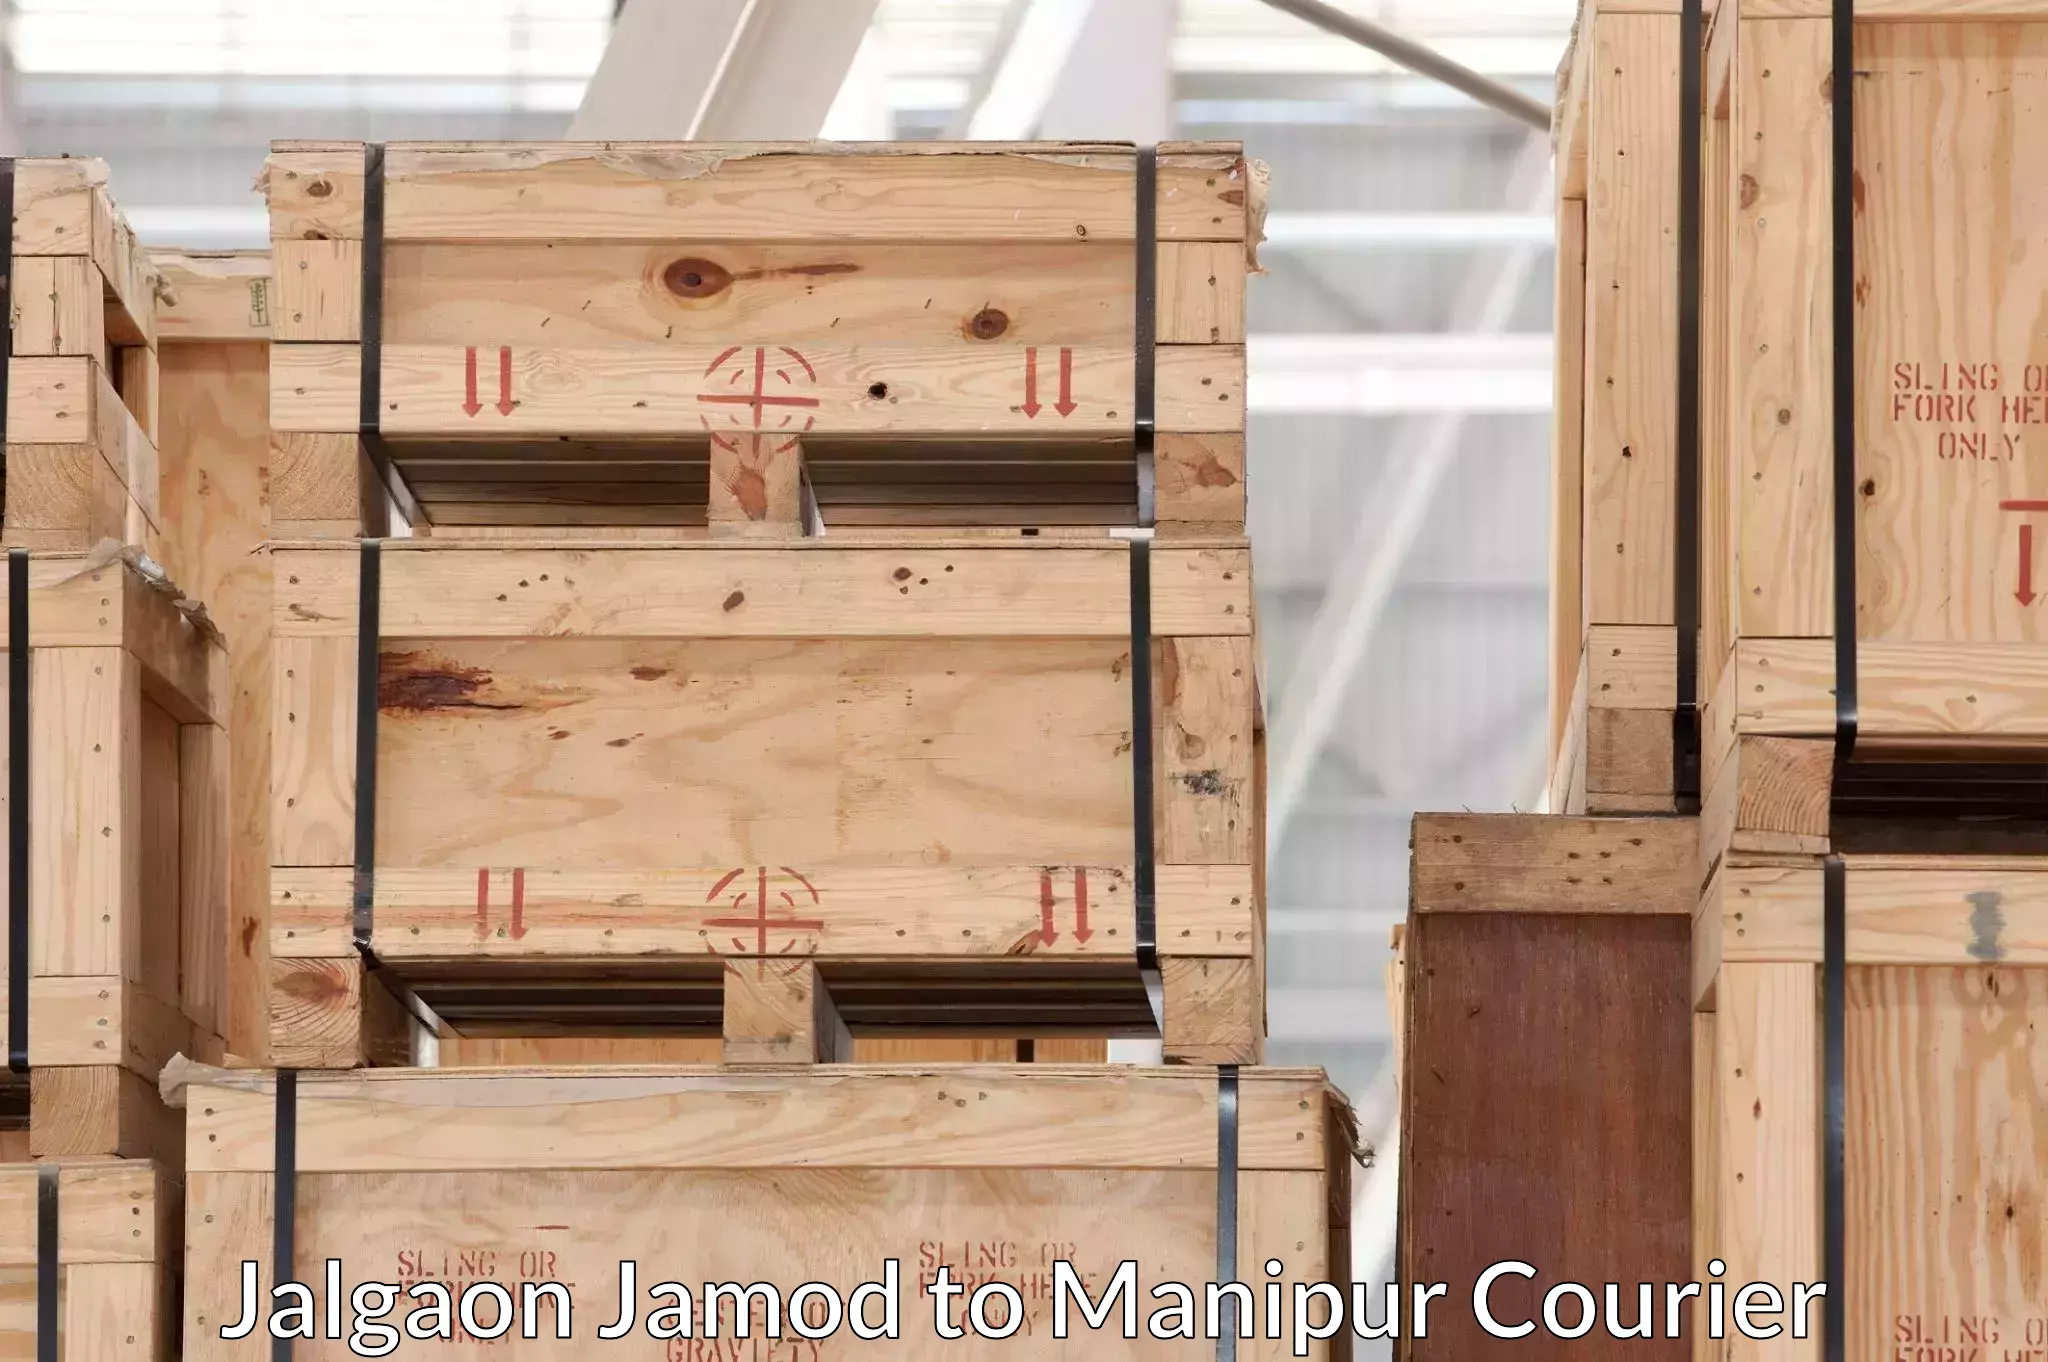 Furniture moving experts Jalgaon Jamod to Thoubal